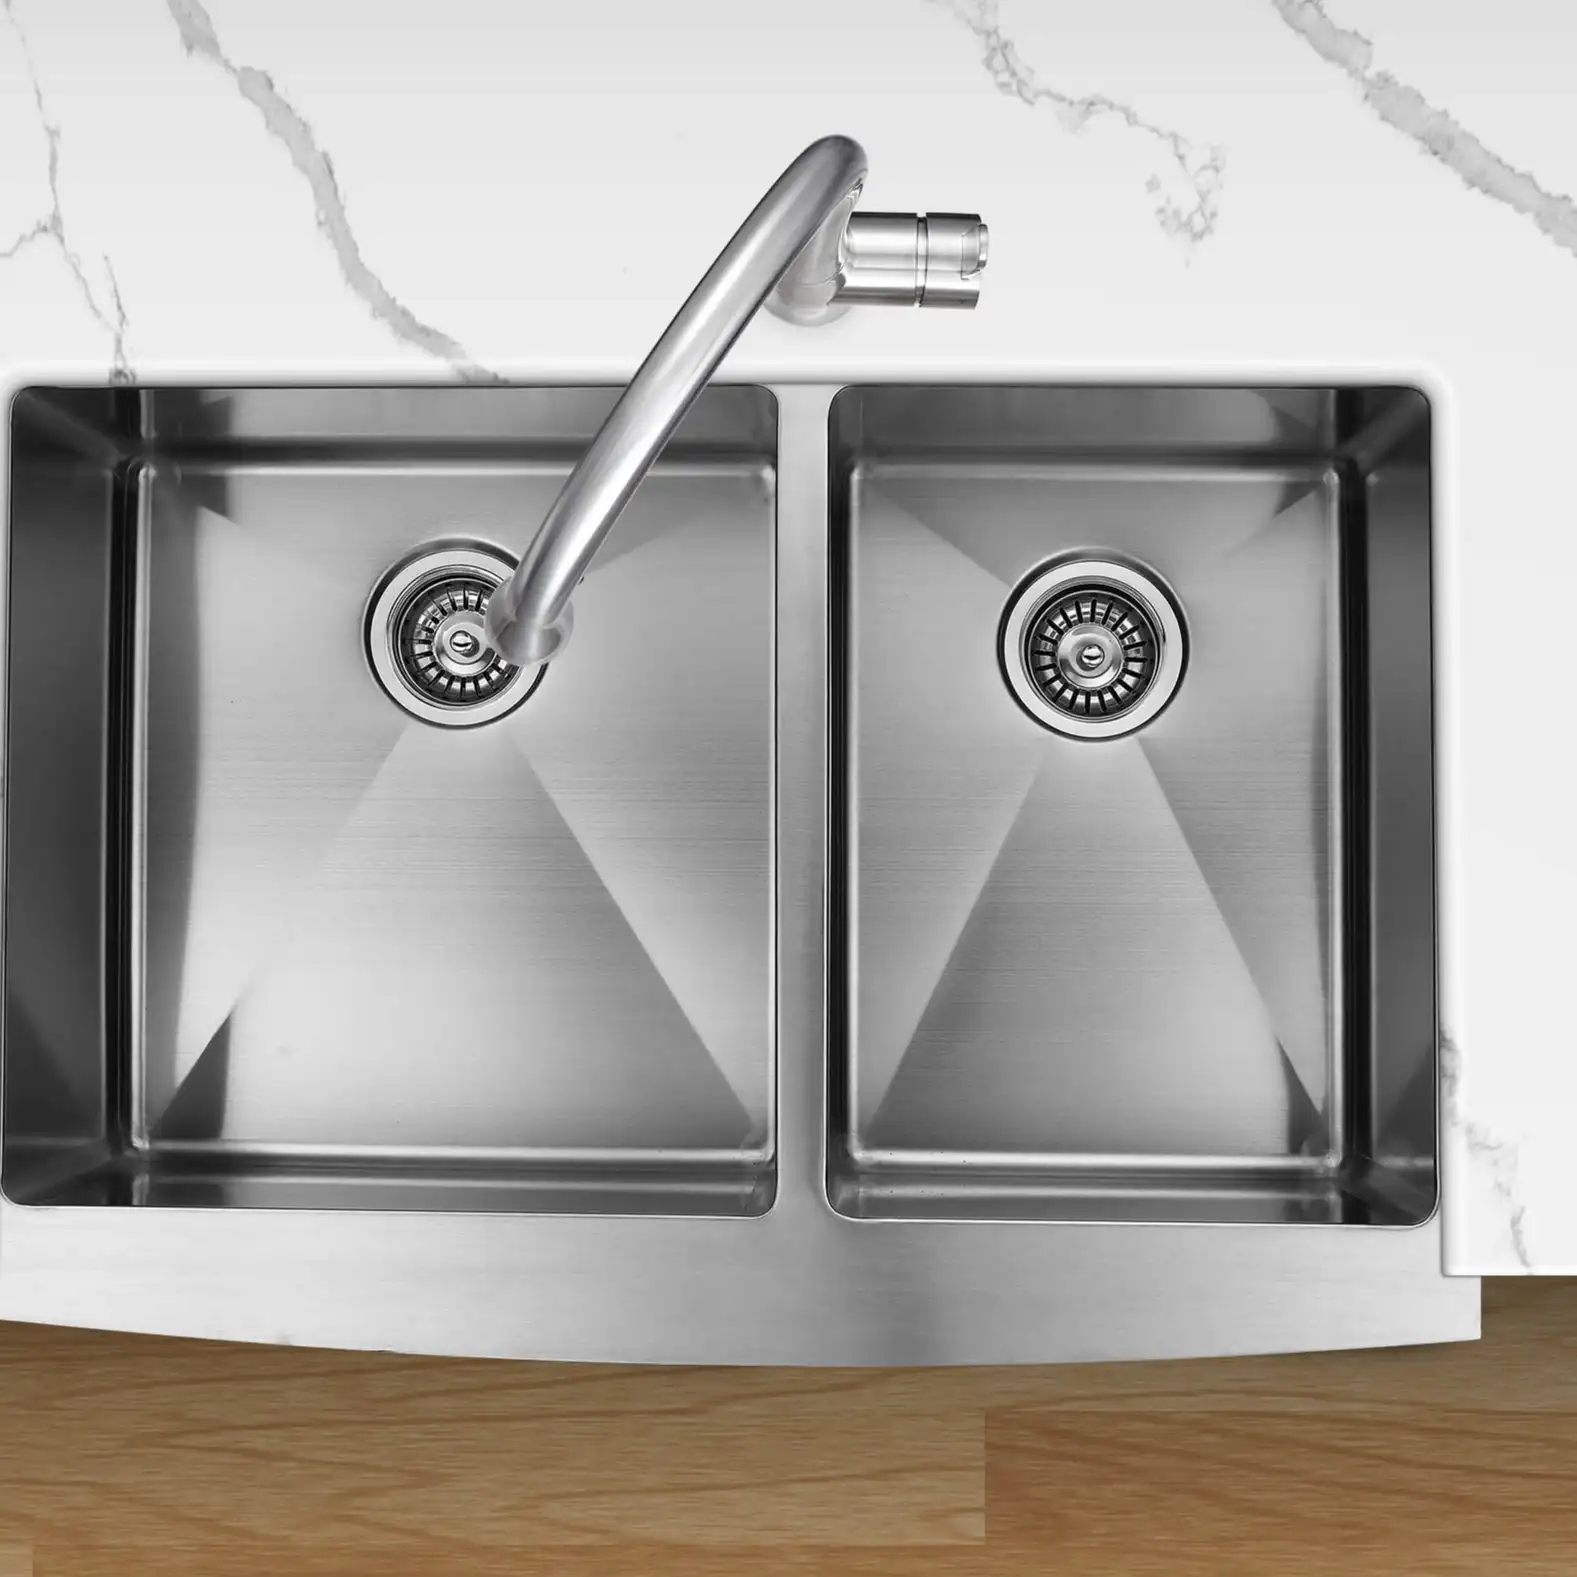 الجملة العرف تصميم 304 الفولاذ المقاوم للصدأ undermount أحواض مطبخ كندا